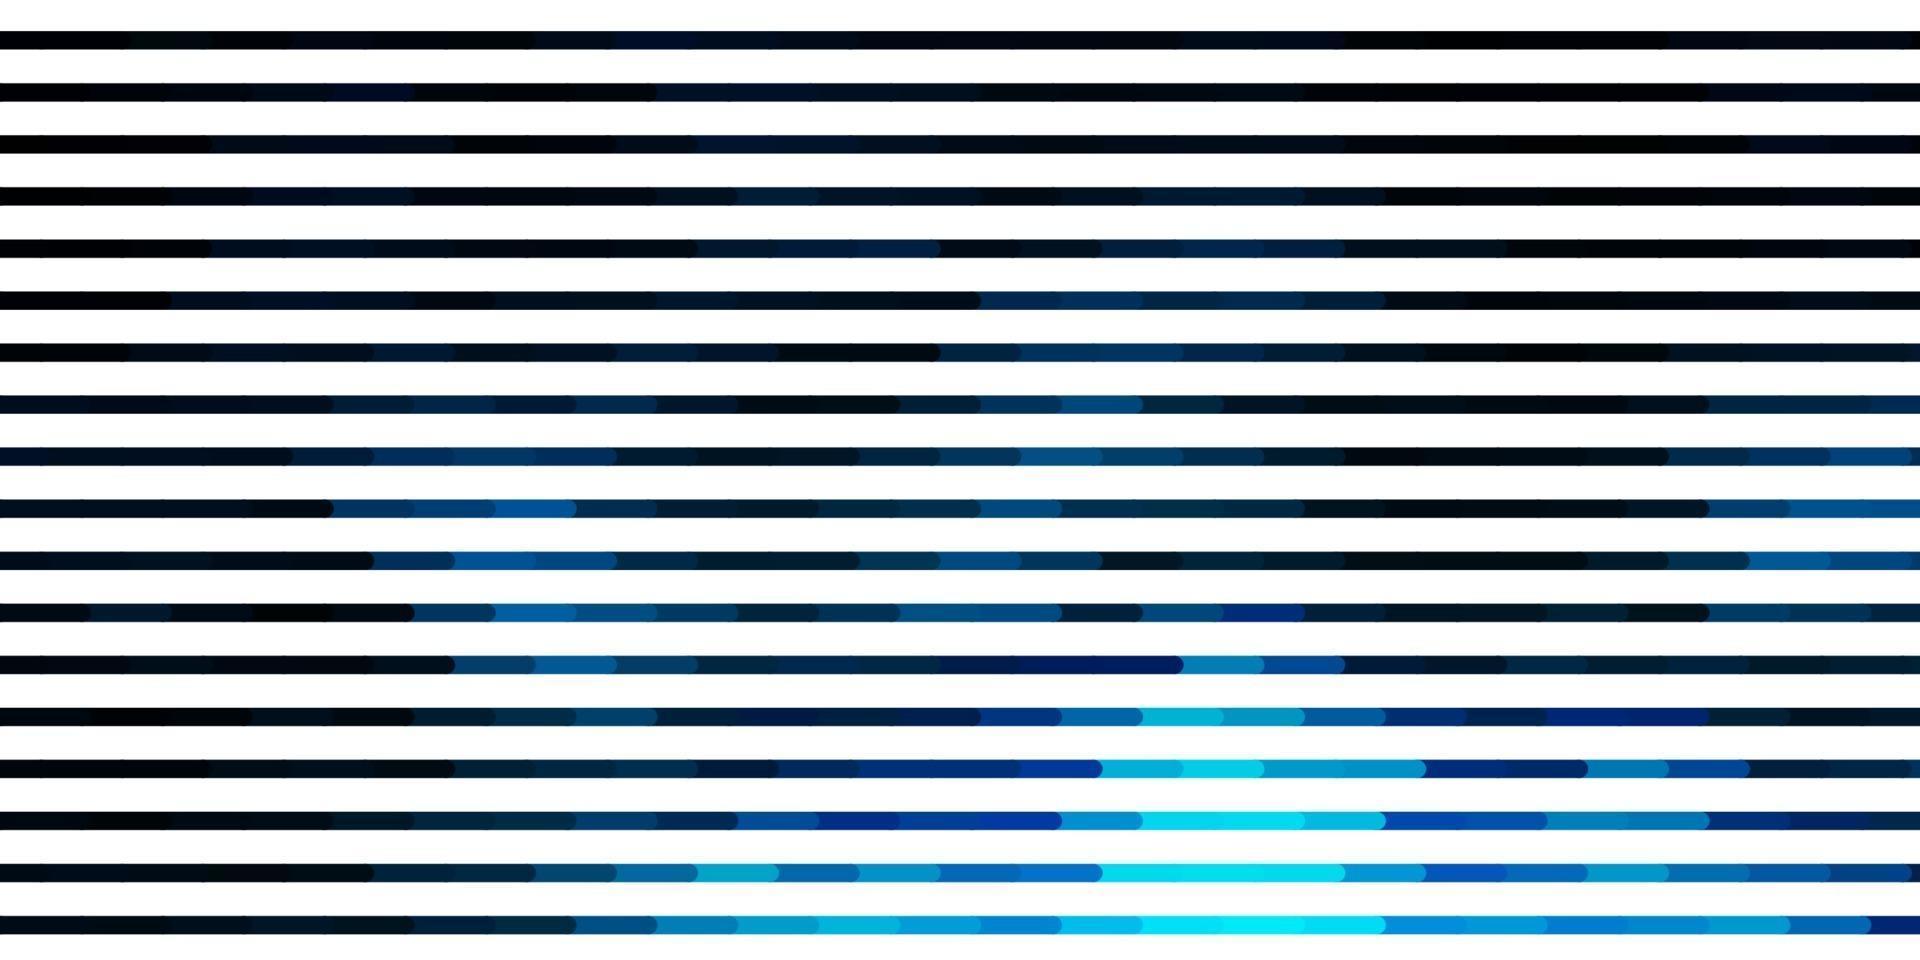 sfondo vettoriale blu scuro con linee.